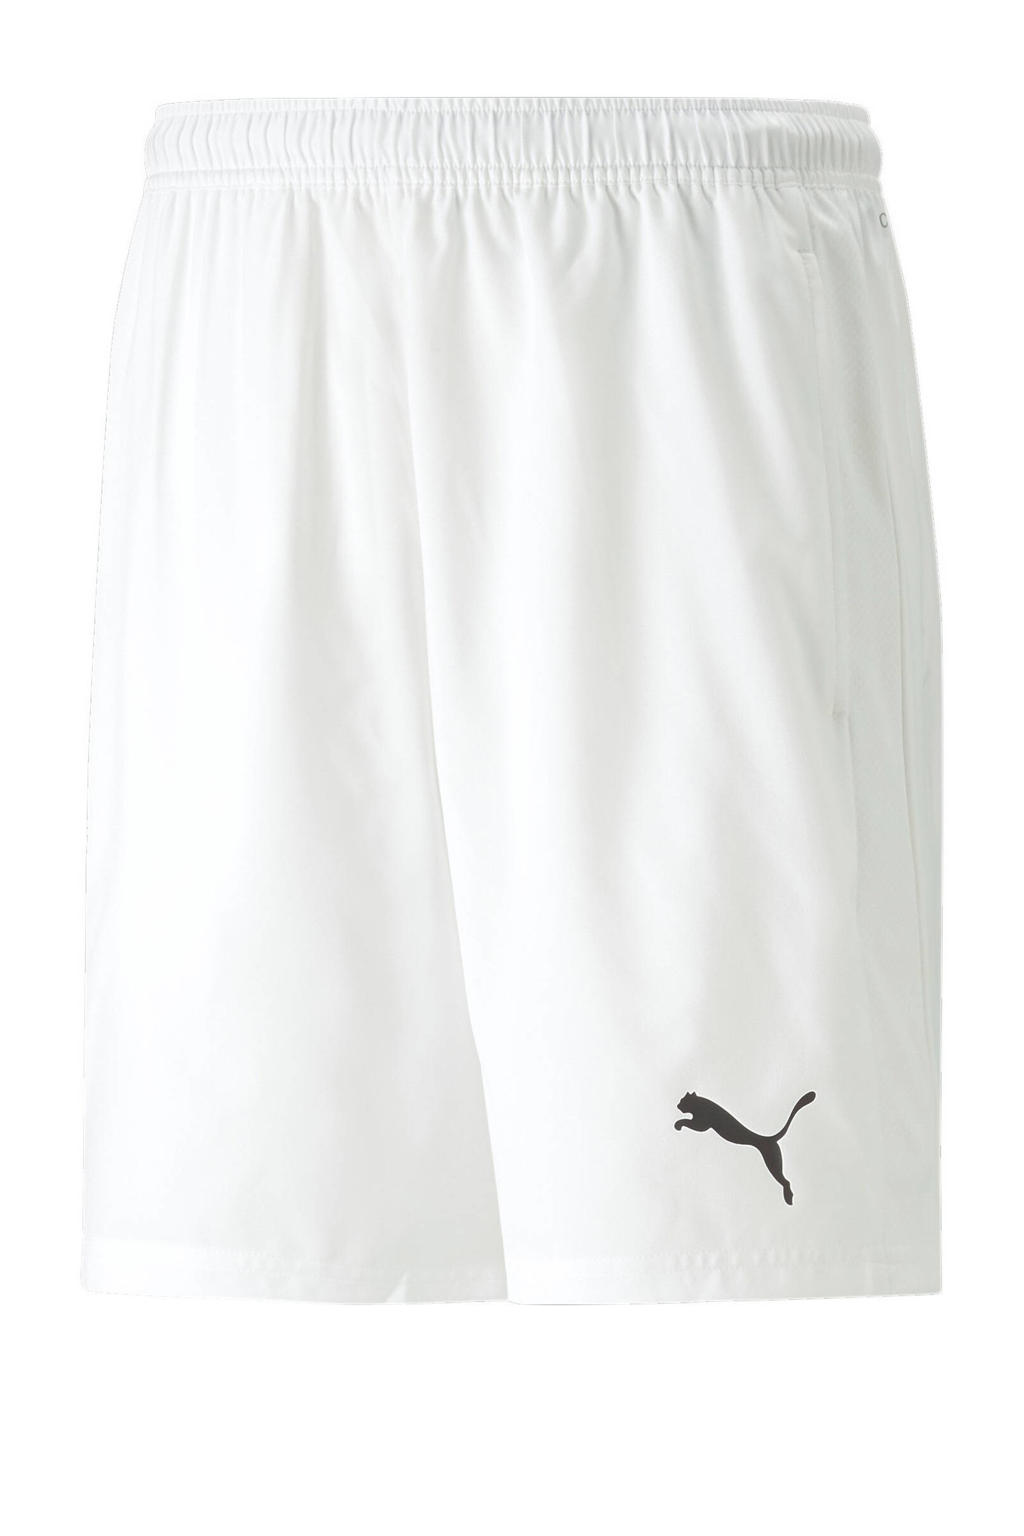 Witte heren Puma sportshort van polyester met regular fit, regular waist en elastische tailleband met koord